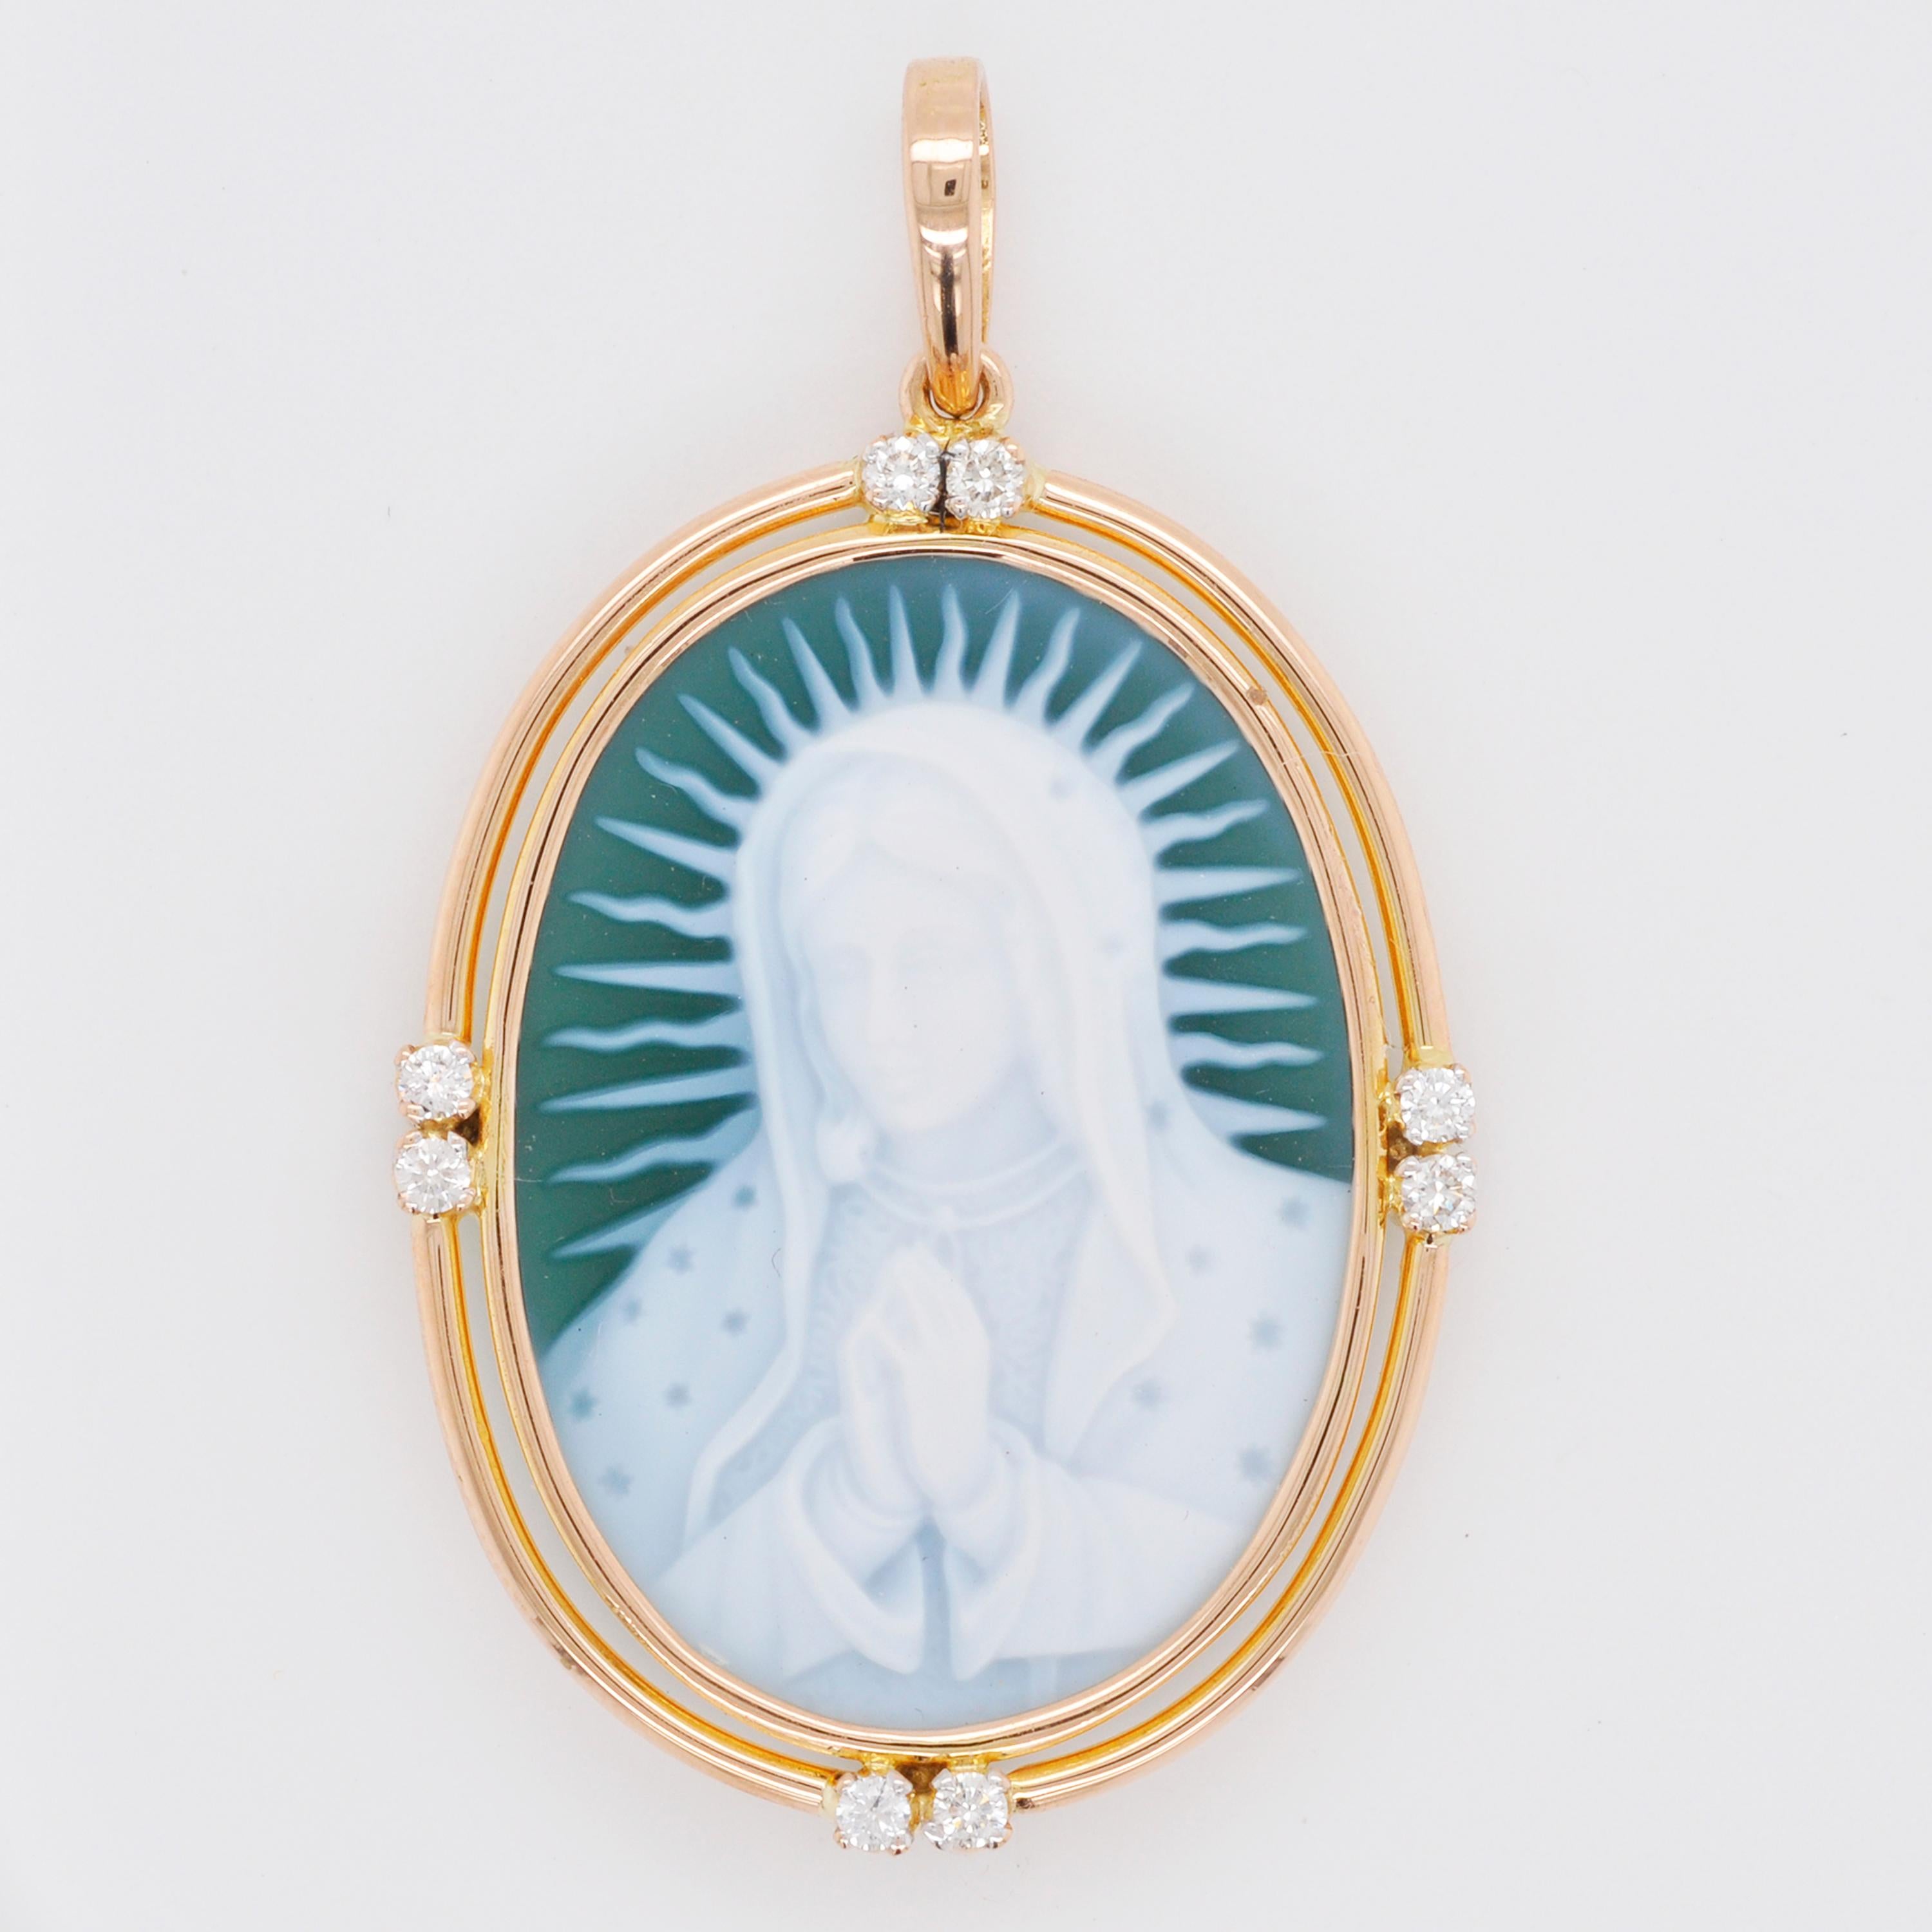 Collier en or 18 carats avec pendentif en diamant camée sculpté en agate Mère Marie

Ce pendentif camée en agate sculptée représentant la Vierge Marie est serti dans une simple monture en or jaune 18 carats (18K), avec une double bordure en or